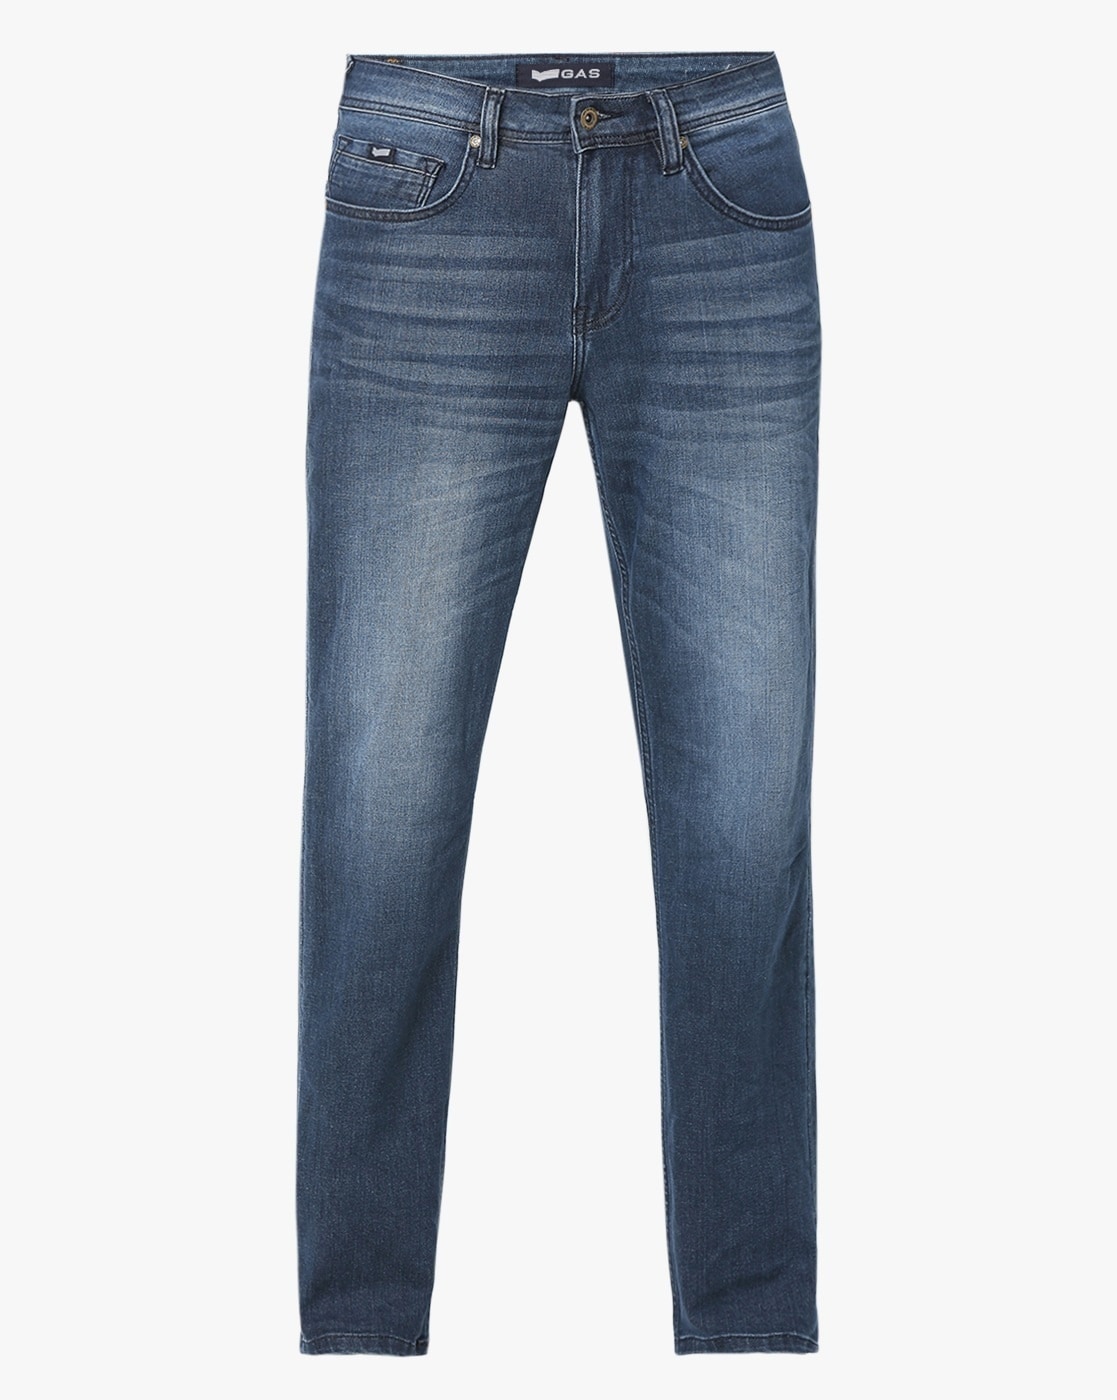 Vintage 👖Vintage 90s Gas Jeans Distressed Denim Multi-pocket | Grailed